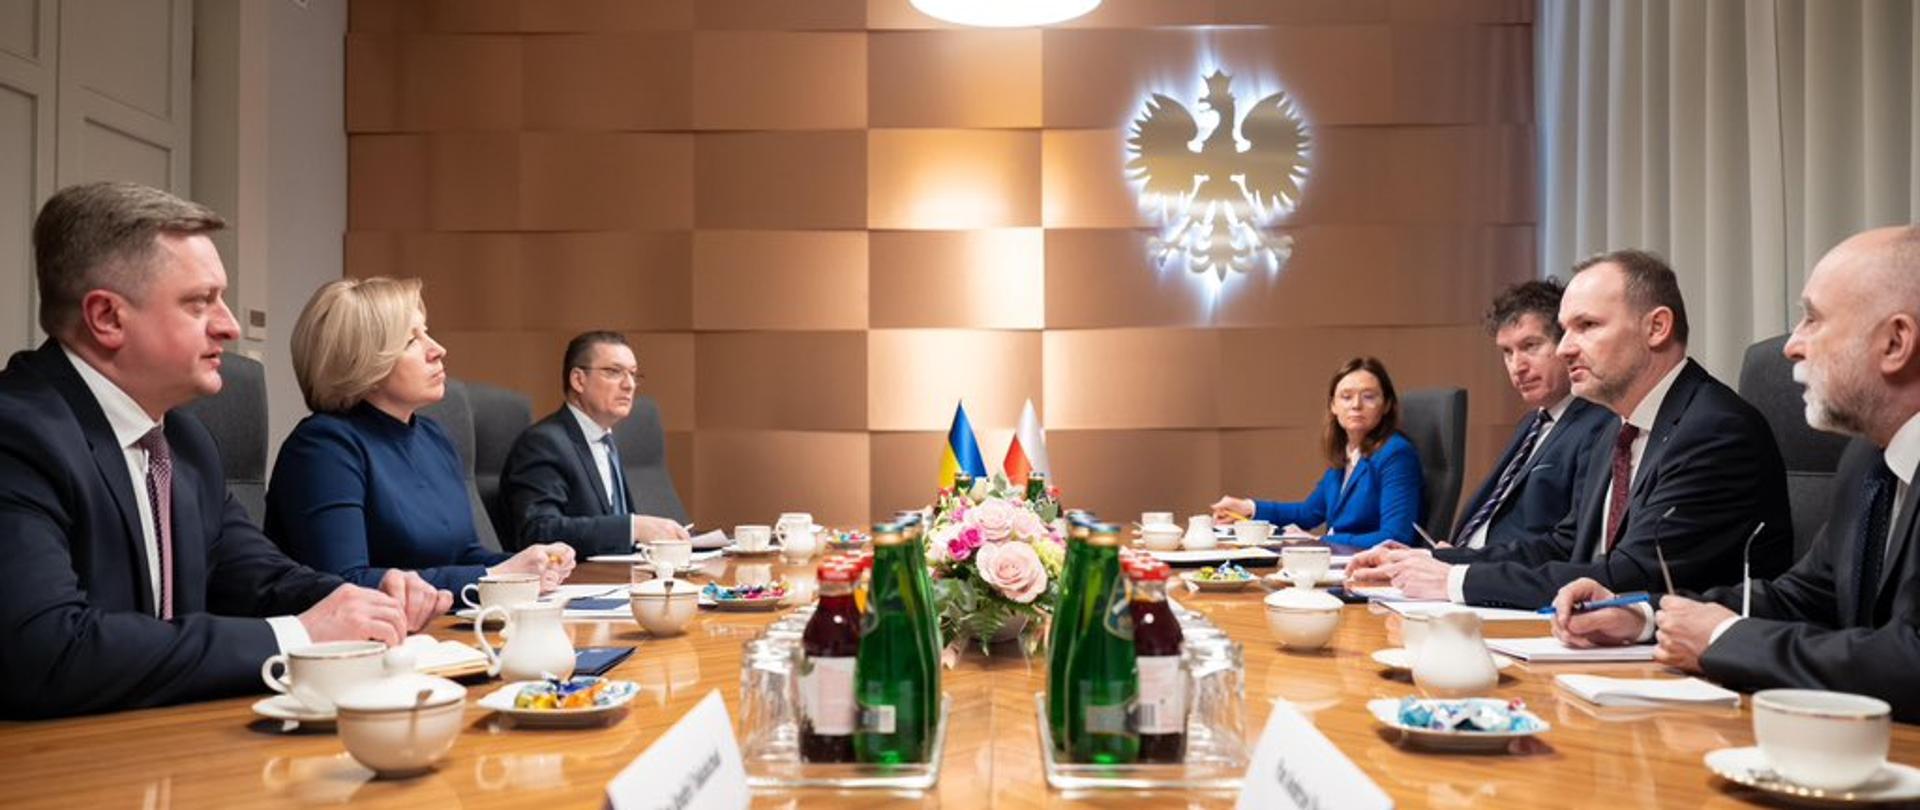 Na zdjęciu widać uczestników polsko-ukraińskich konsultacji międzyrządowych. Uczestnicy siedzą przy stole i rozmawiają. Po prawej stronie widać reprezentację strony polskiej, w tym ministra Krzysztofa Hetmana. Po lewej stronie reprezentacja strony ukraińskiej. 